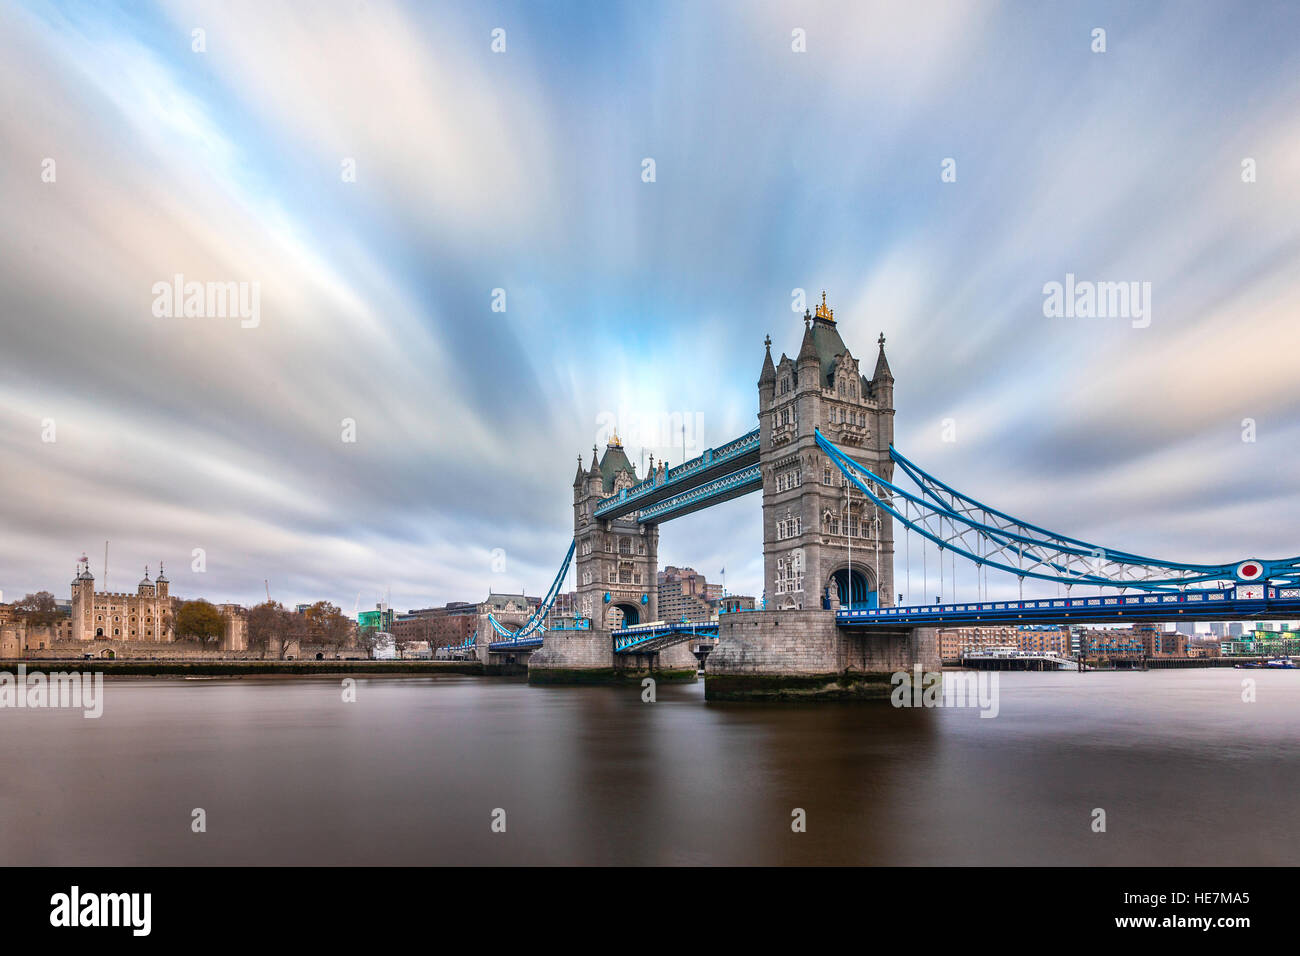 Le Tower Bridge de Londres, une exposition longue shot. Banque D'Images